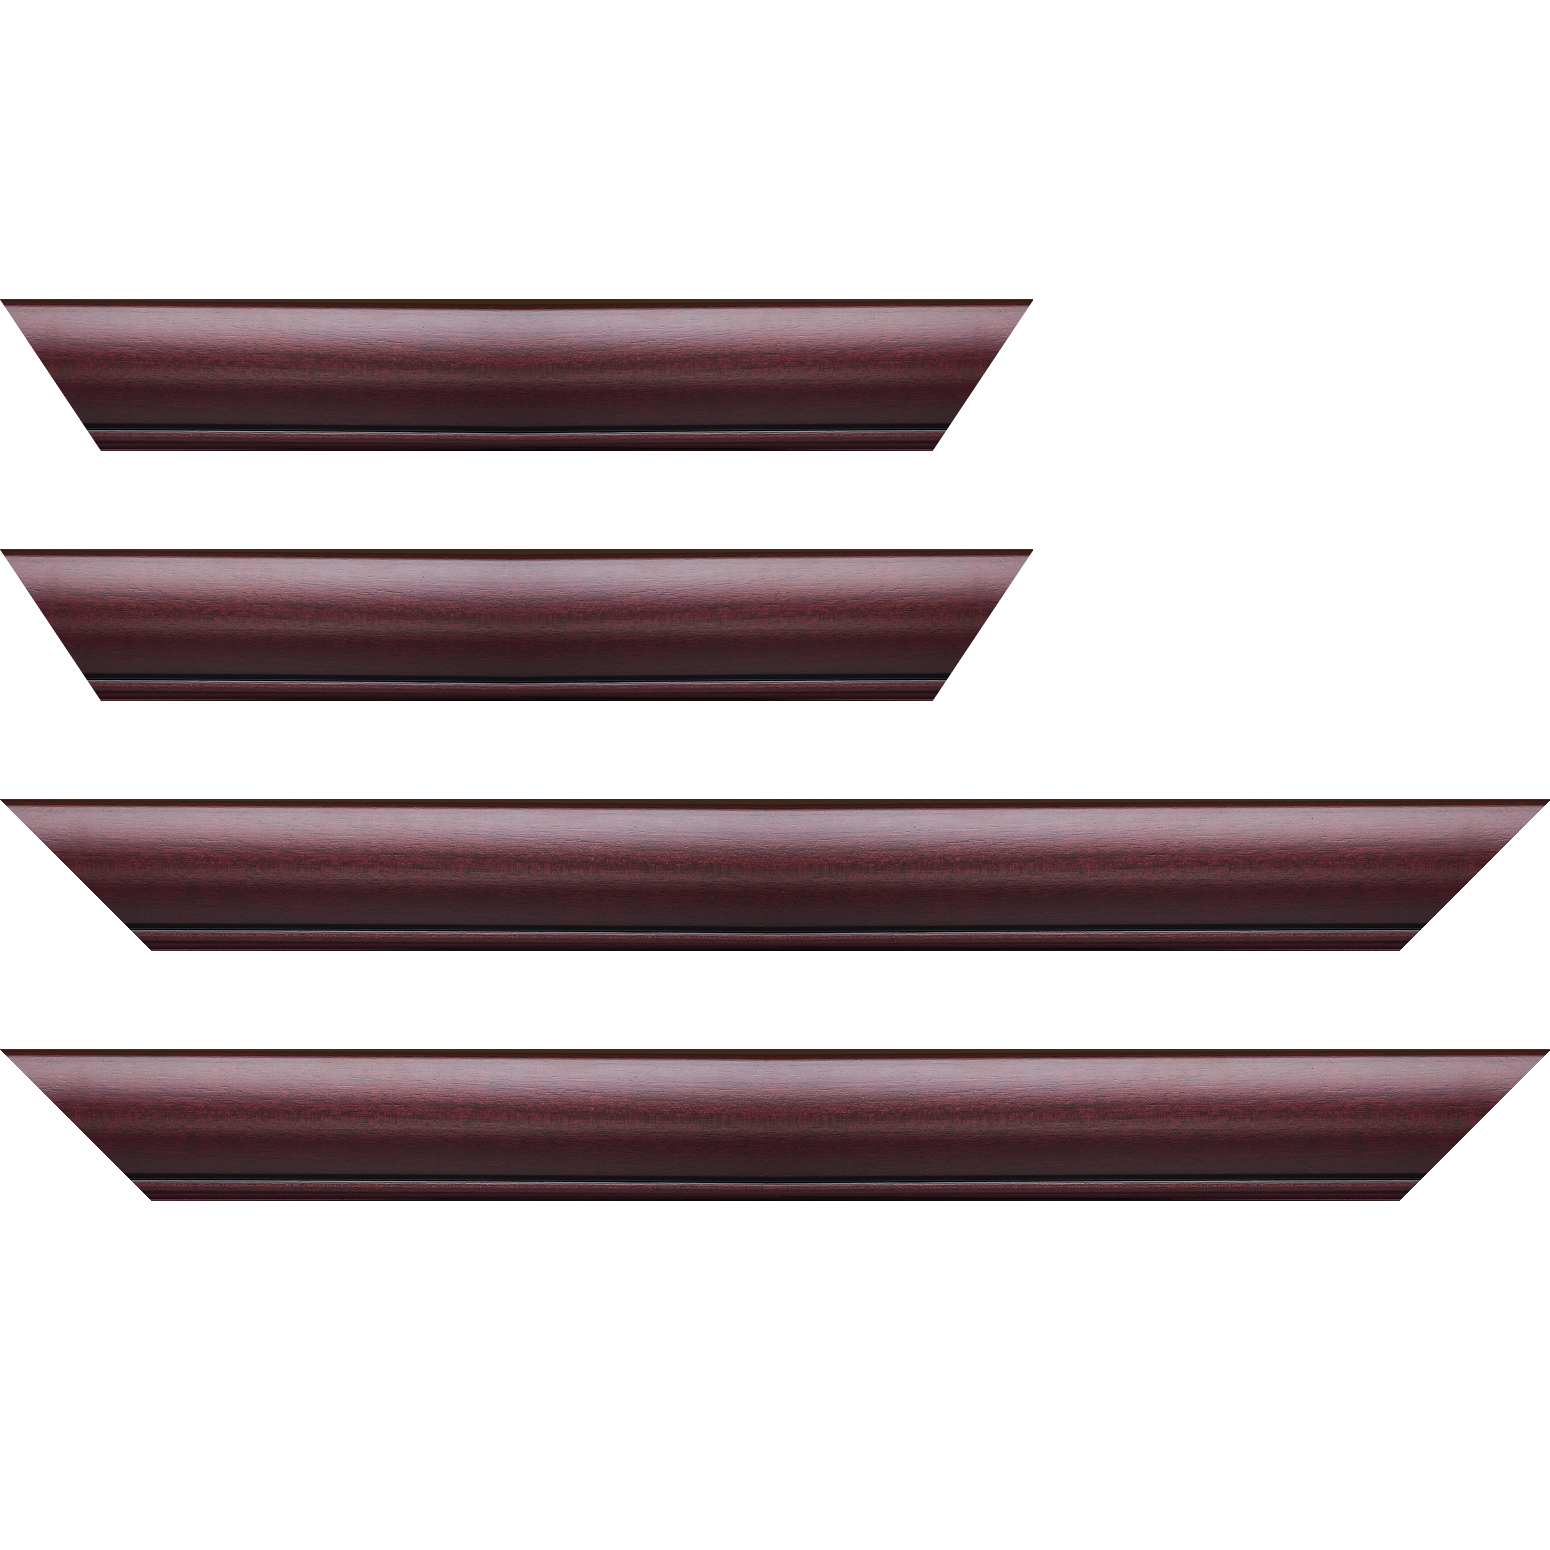 Baguette bois profil arrondi largeur 4.7cm couleur bordeaux lie de vin satiné rehaussé d'un filet noir - 59.4x84.1